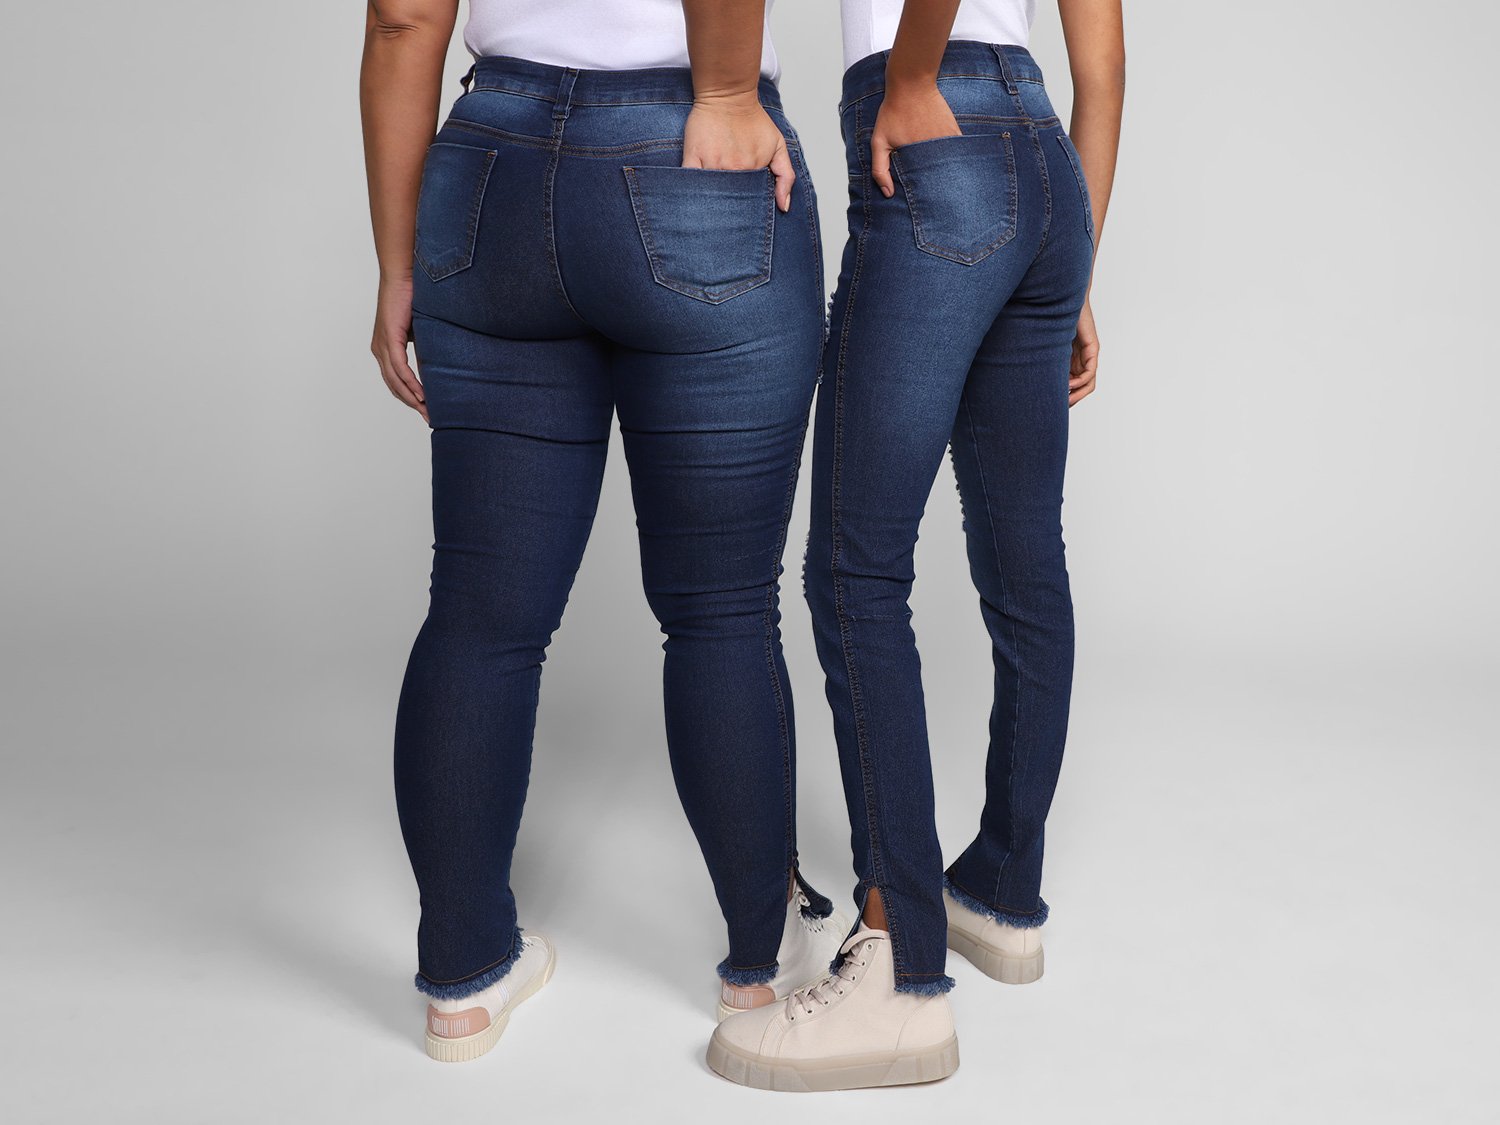 Calça Jeans Skinny Vista Magalu Barra Desfiada - Puídos - 1